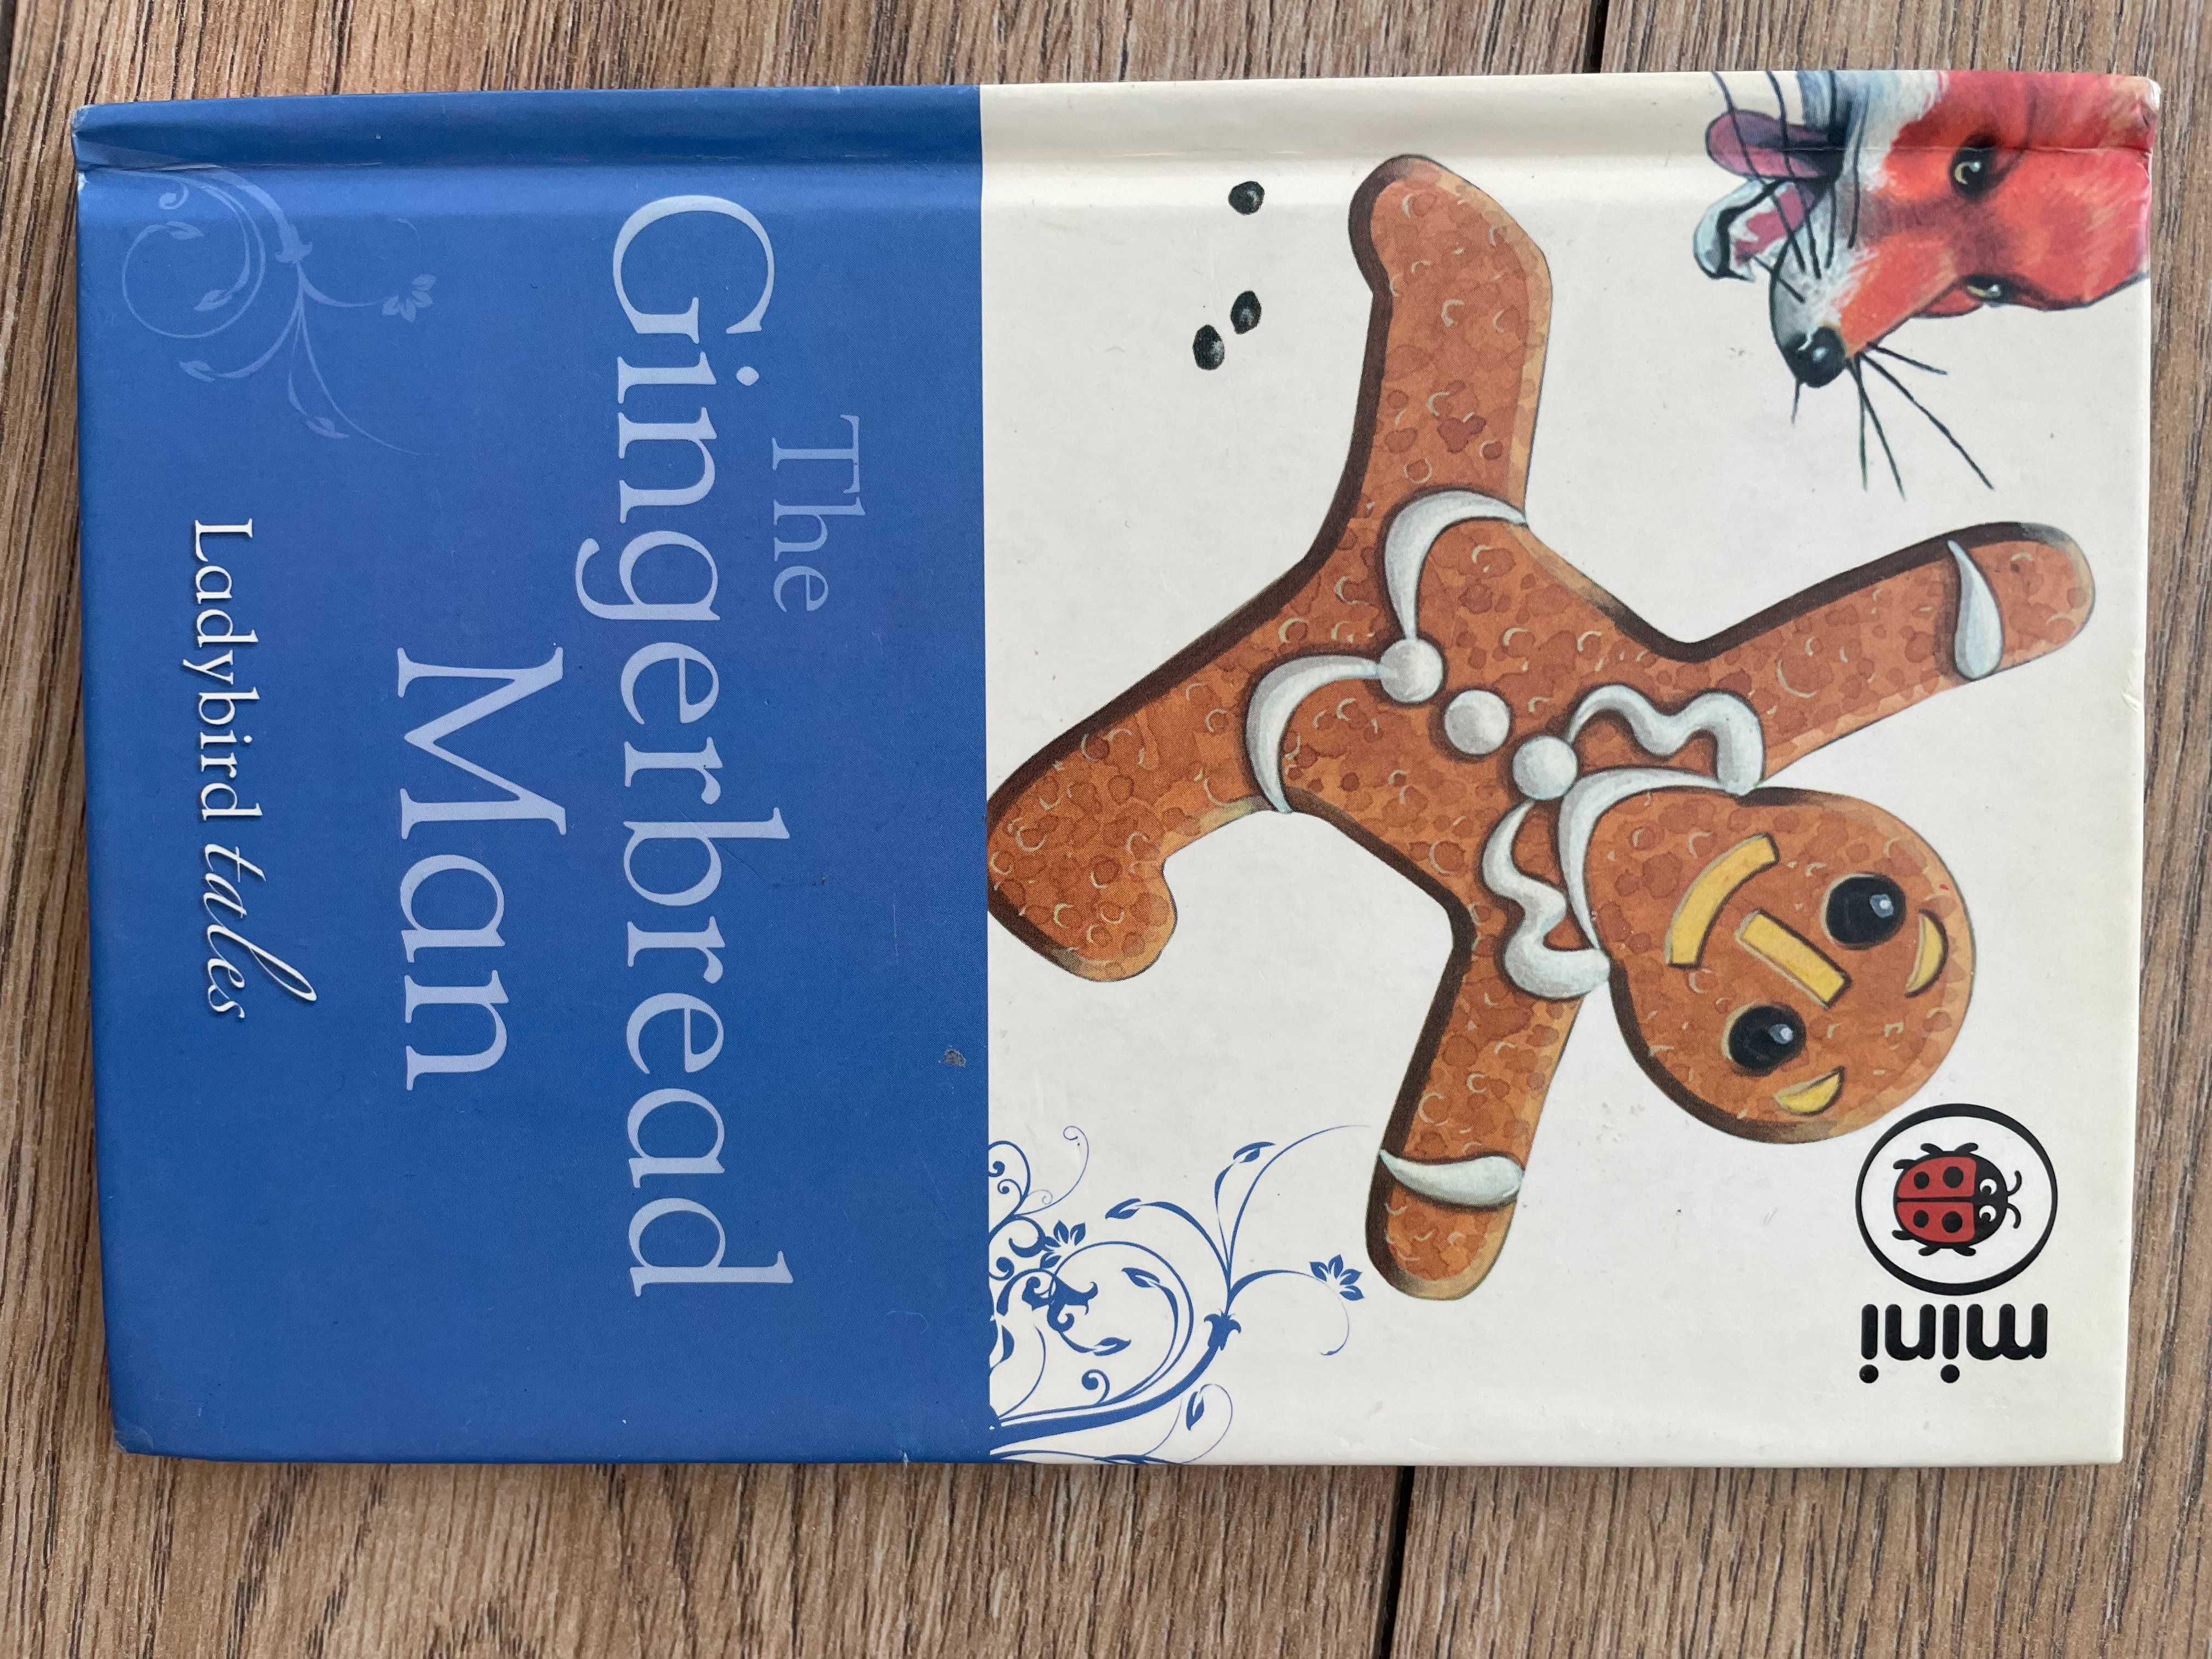 Książeczka językowa język angielski/ The gingerbread man